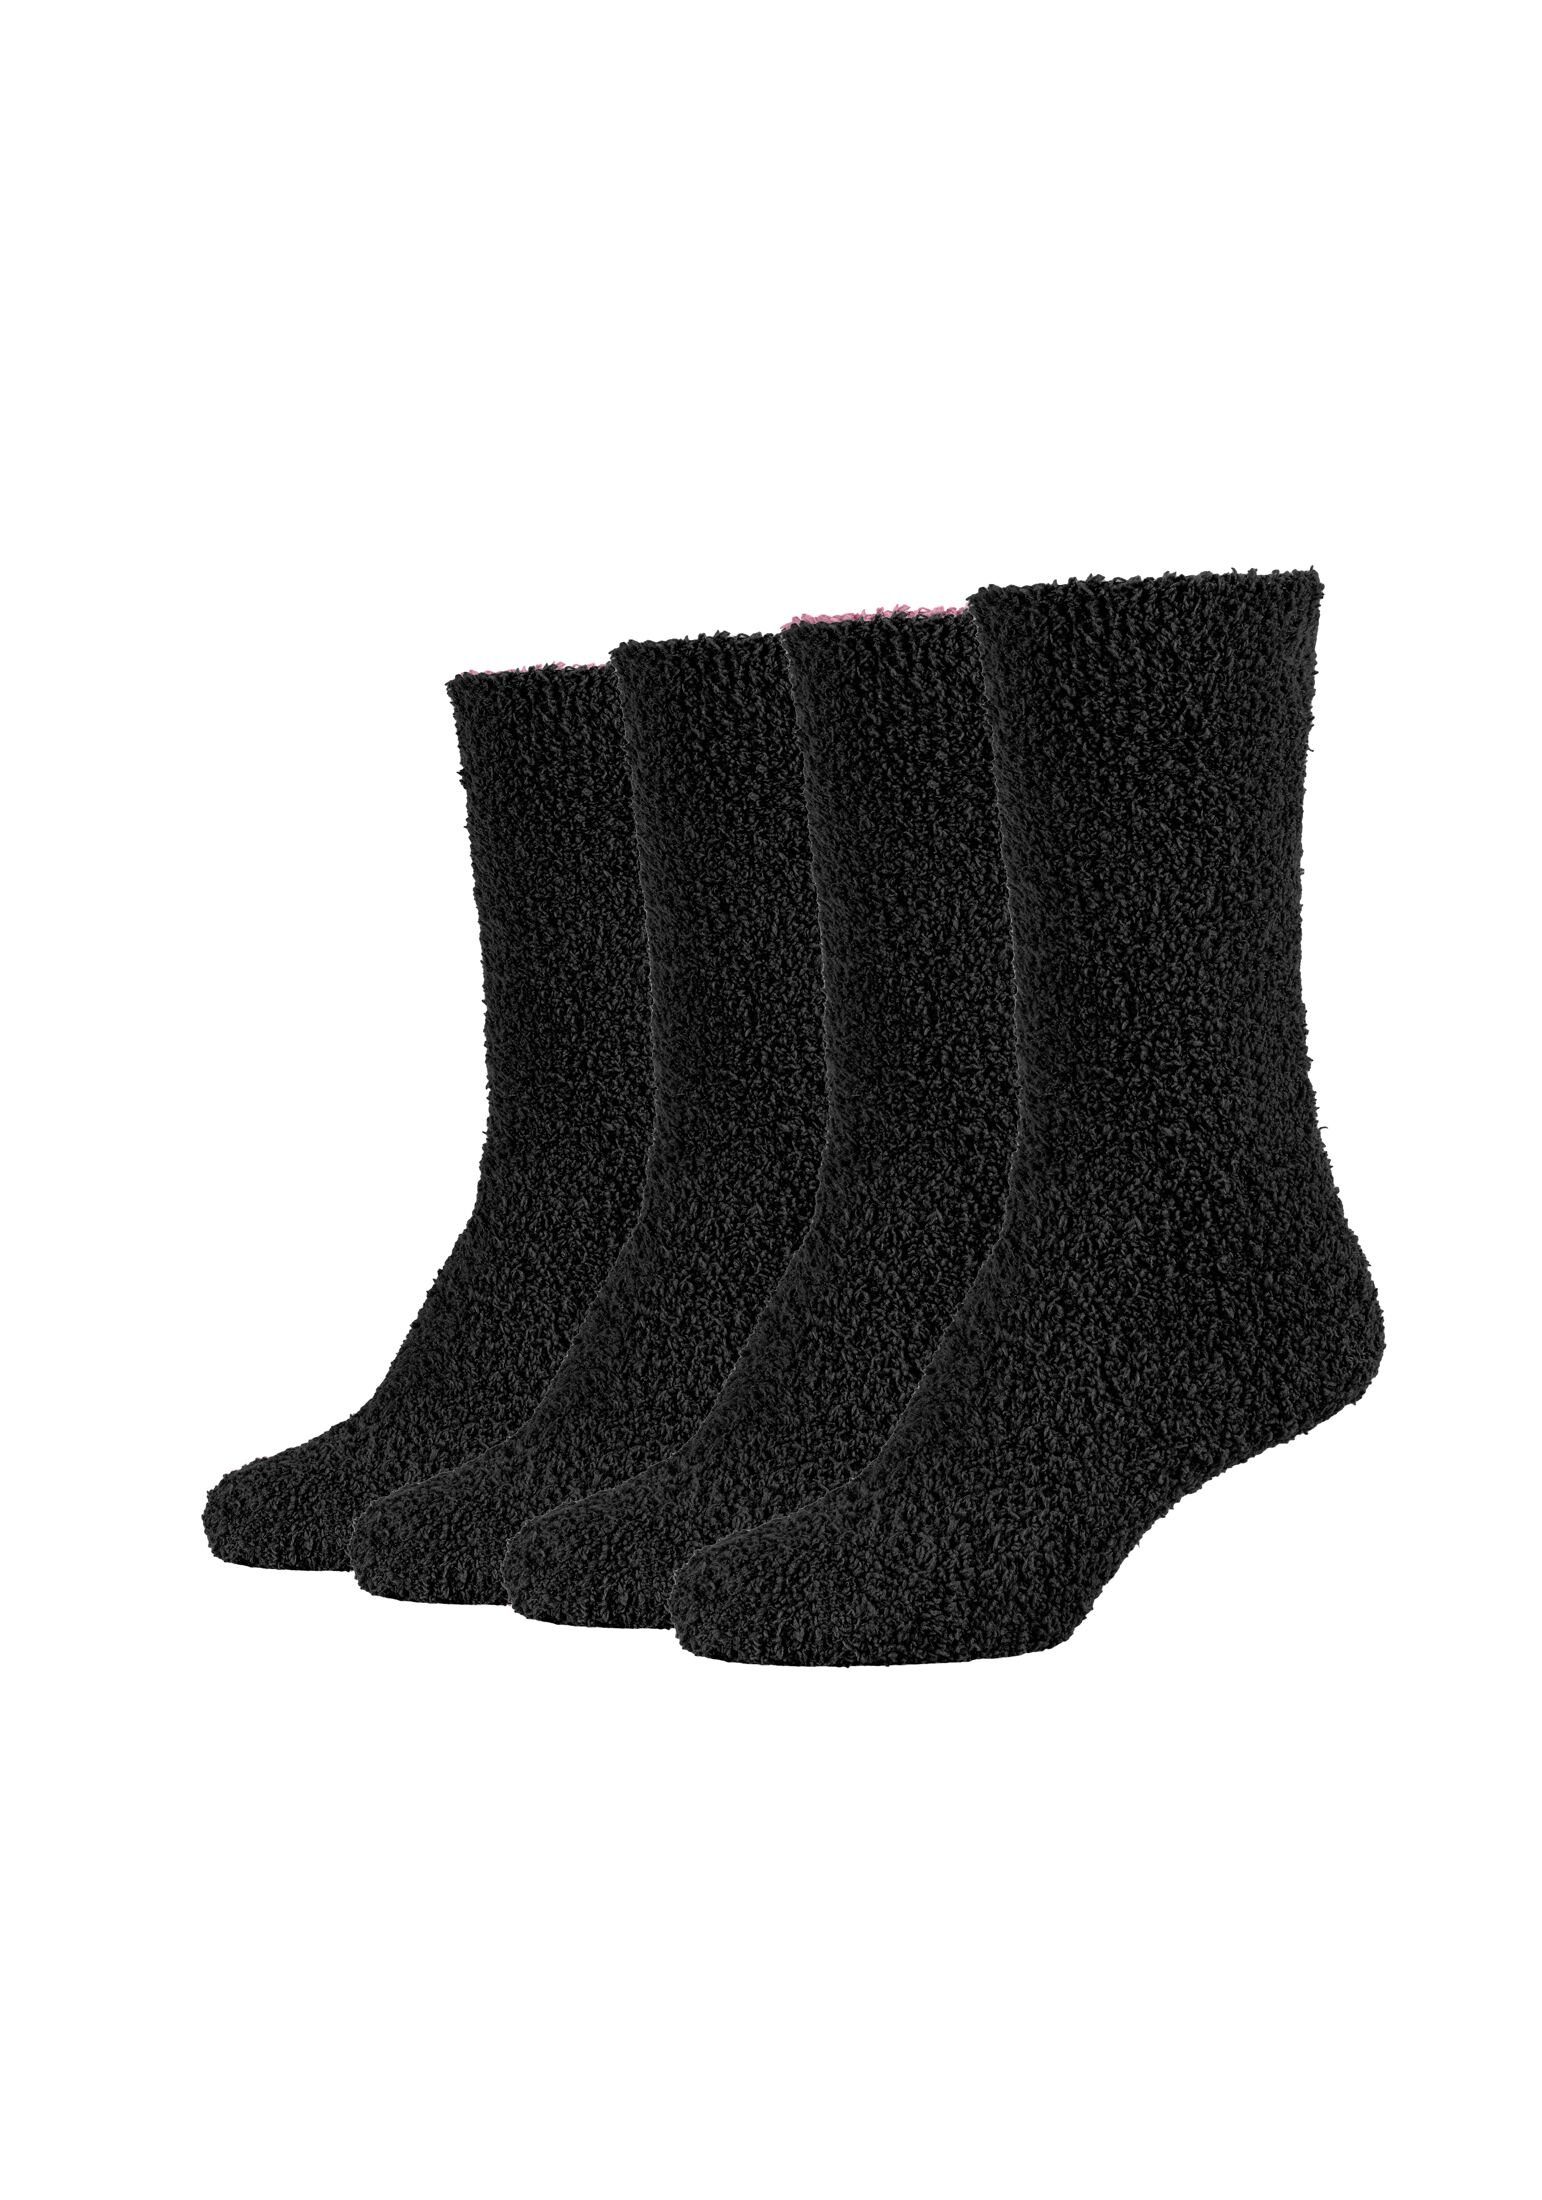 Camano Socken Socken Cosy Kuschelsocken Flauschig Warm Damen Lang black mix